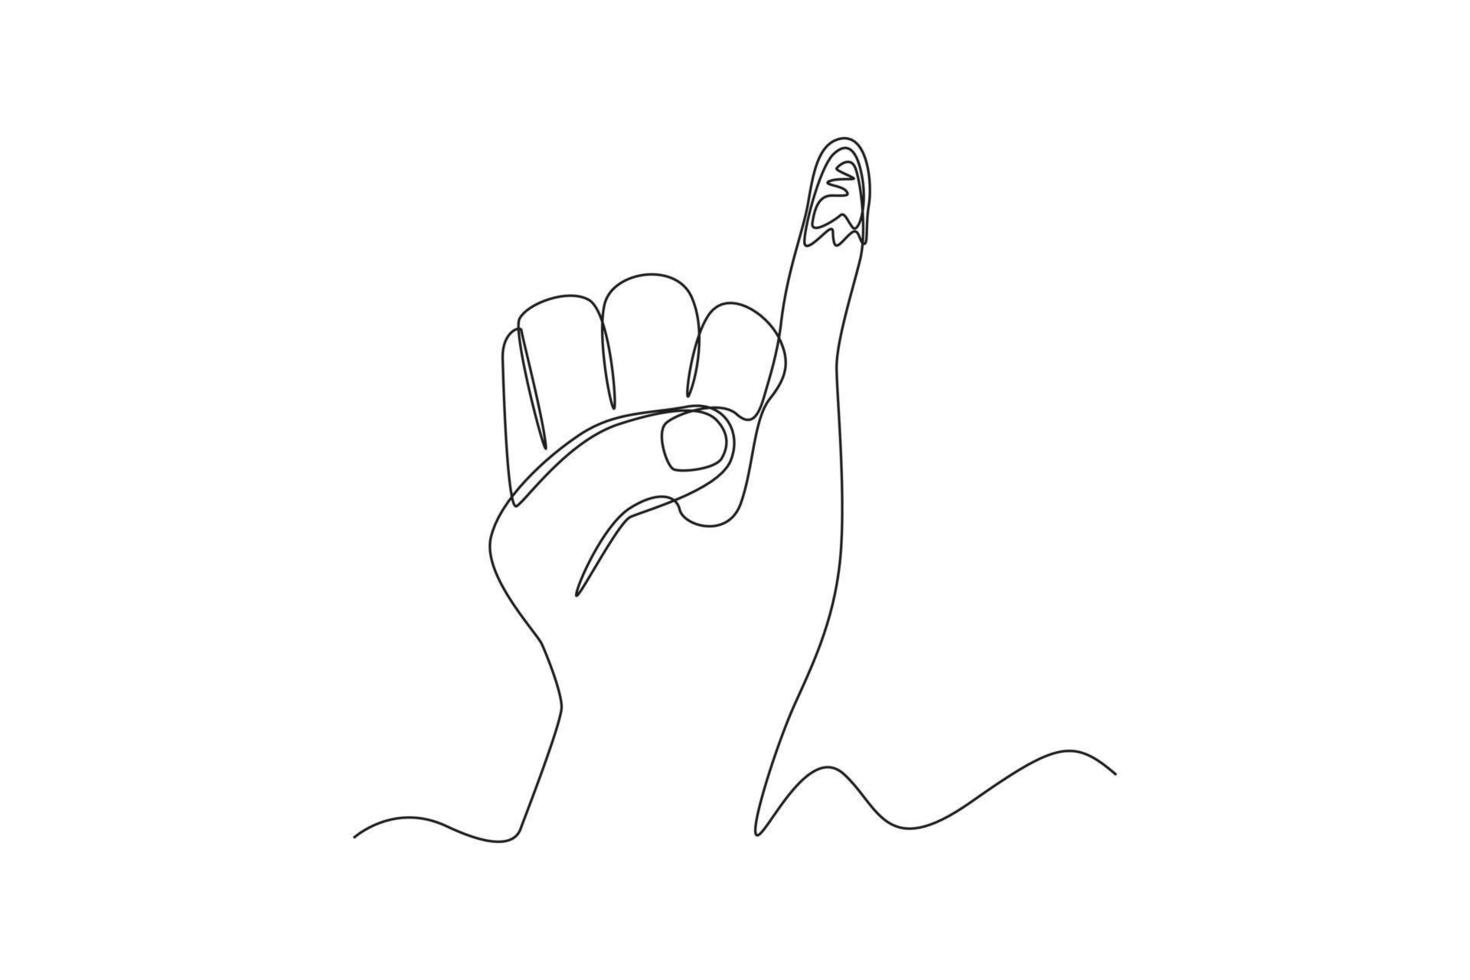 la marca de tinta de dibujo de una línea continua en el dedo meñique ha votado por elecciones generales regionales o presidenciales. concepto de votación. ilustración gráfica vectorial de diseño de dibujo de una sola línea. vector